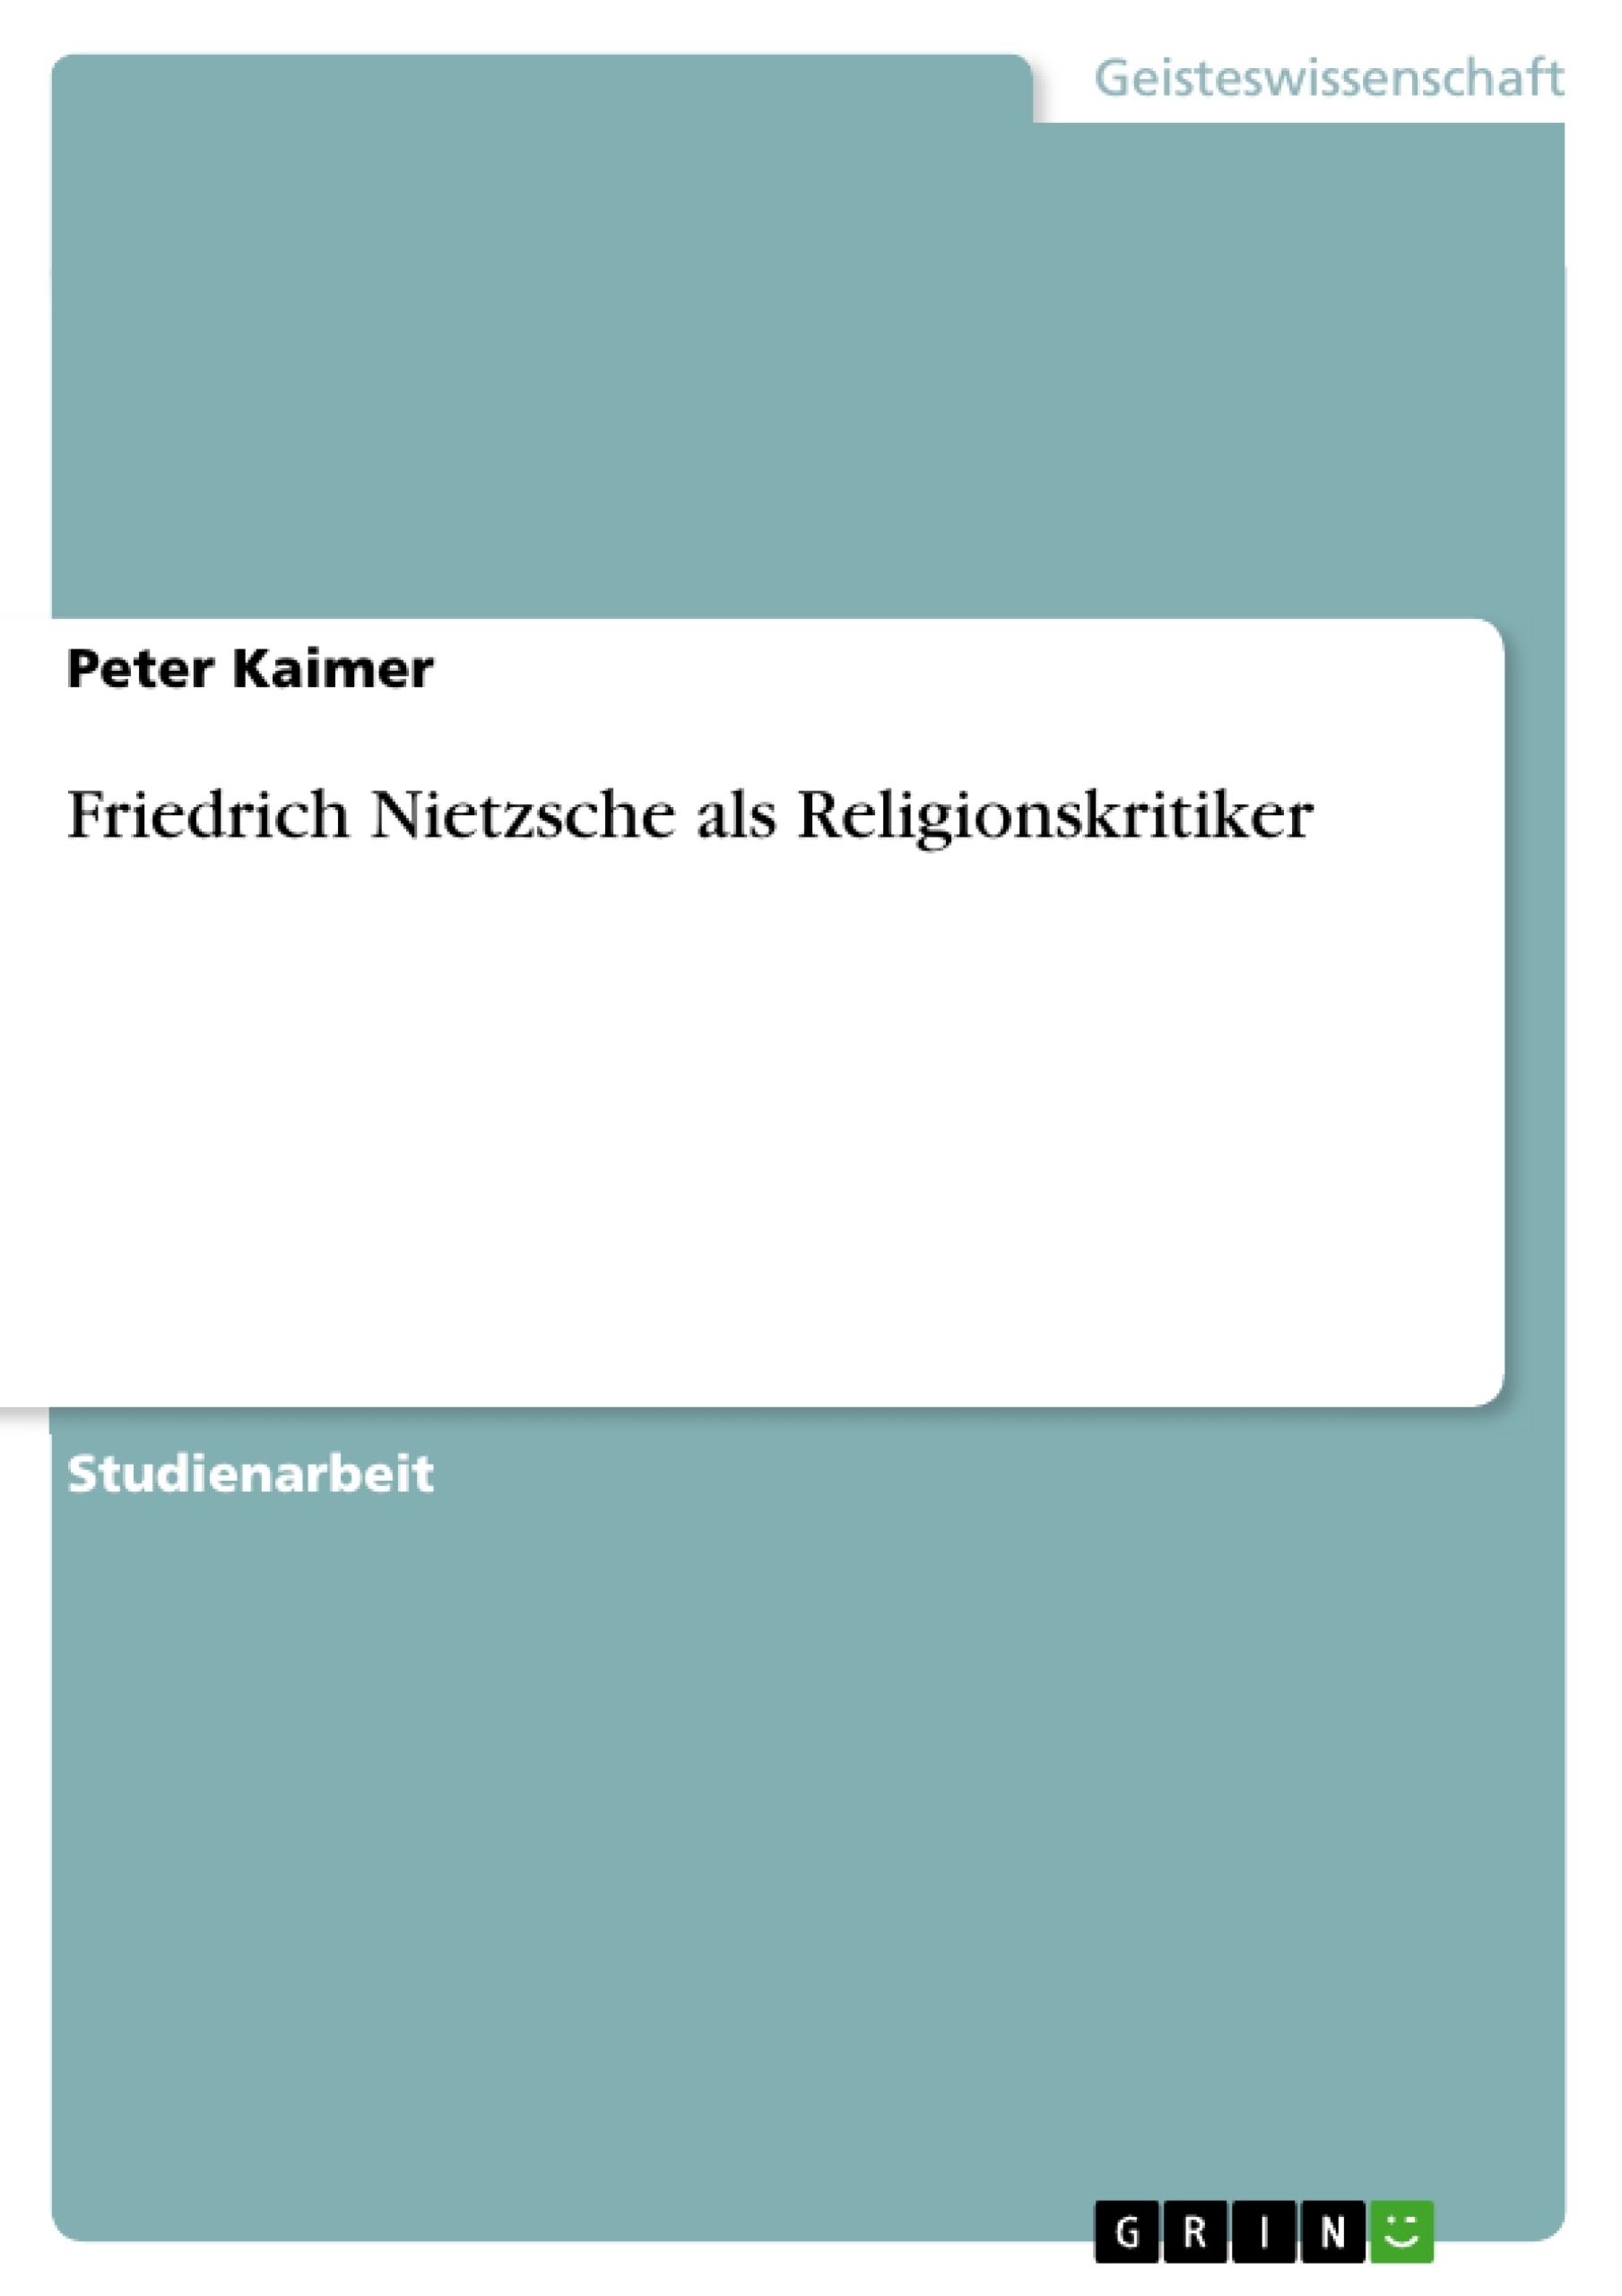 Título: Friedrich Nietzsche als Religionskritiker